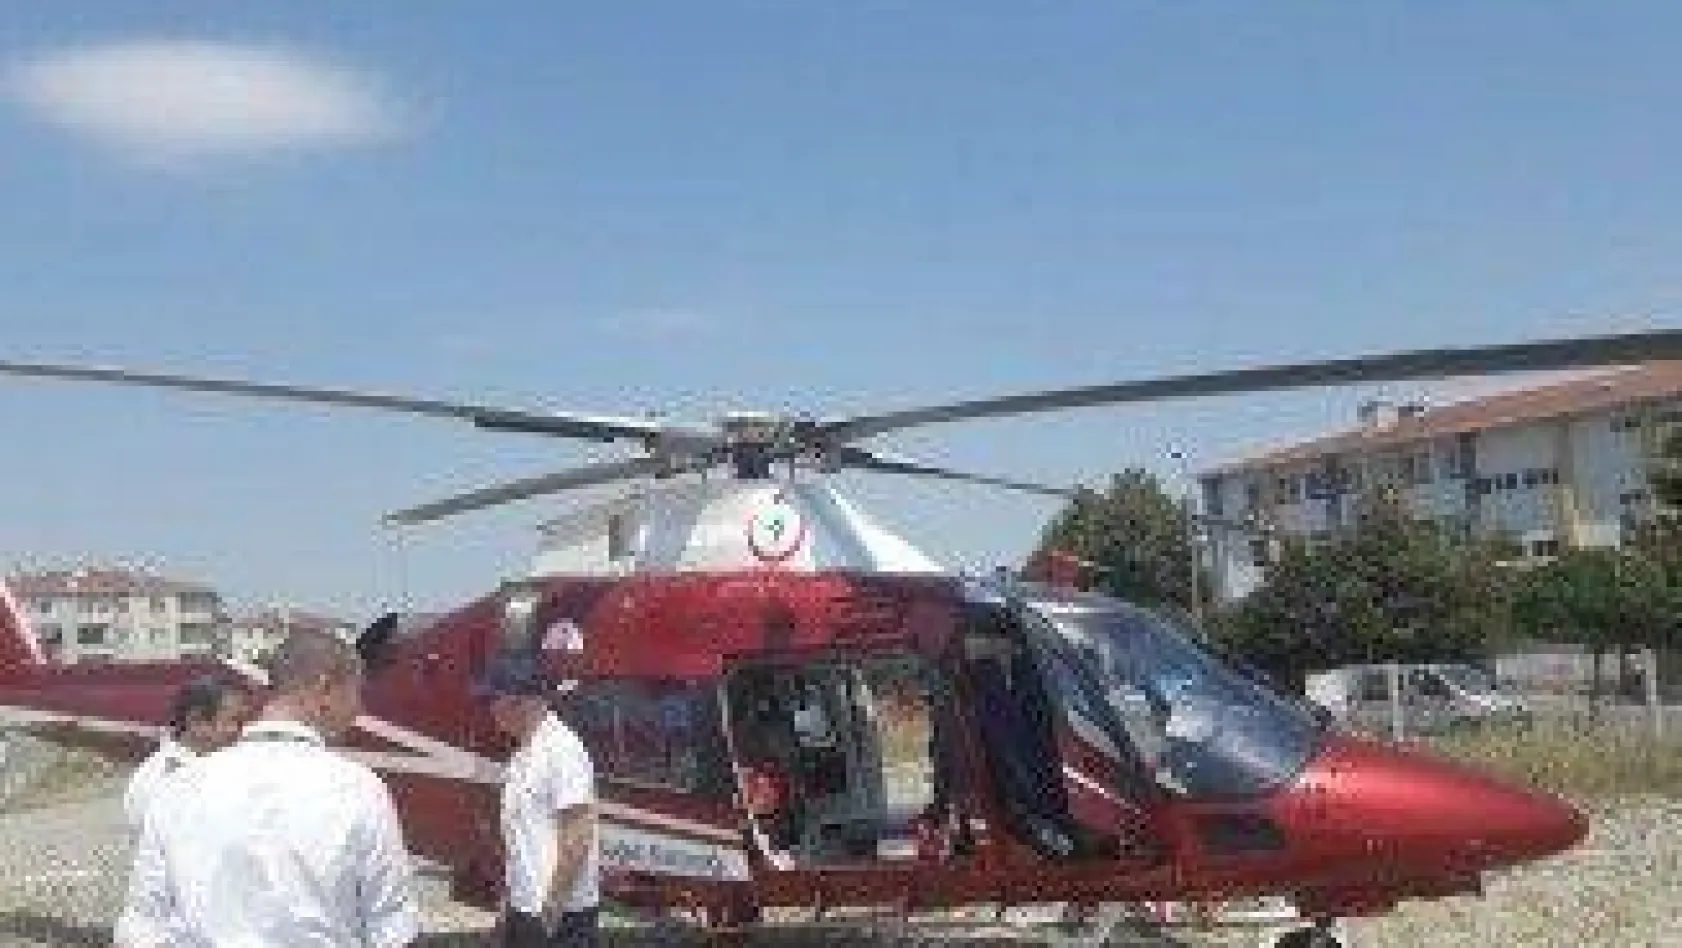 Yaralı işçi helikopterle sevk edildi